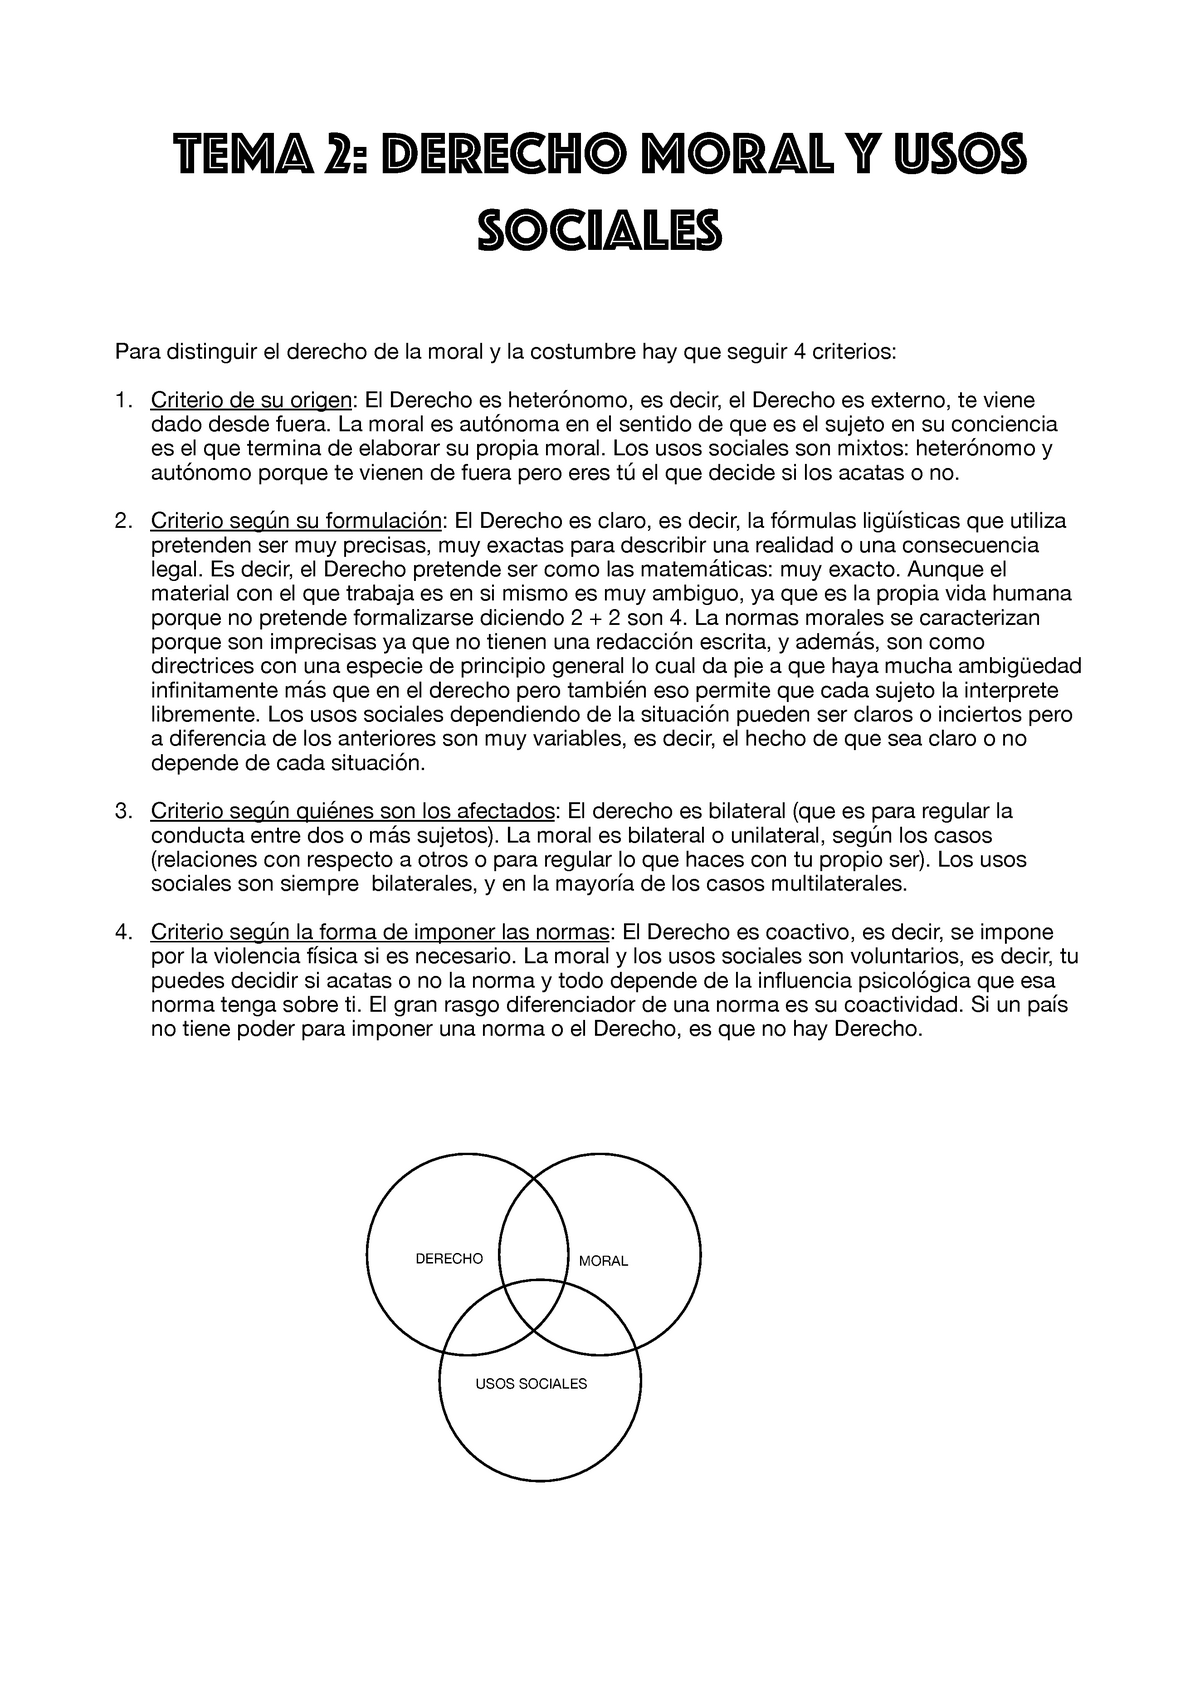 Tema 2 Filosofía del Derecho pdf - TeMA 2: DERECHO MORAL Y USOS SOCIALES  Para distinguir el derecho - StuDocu